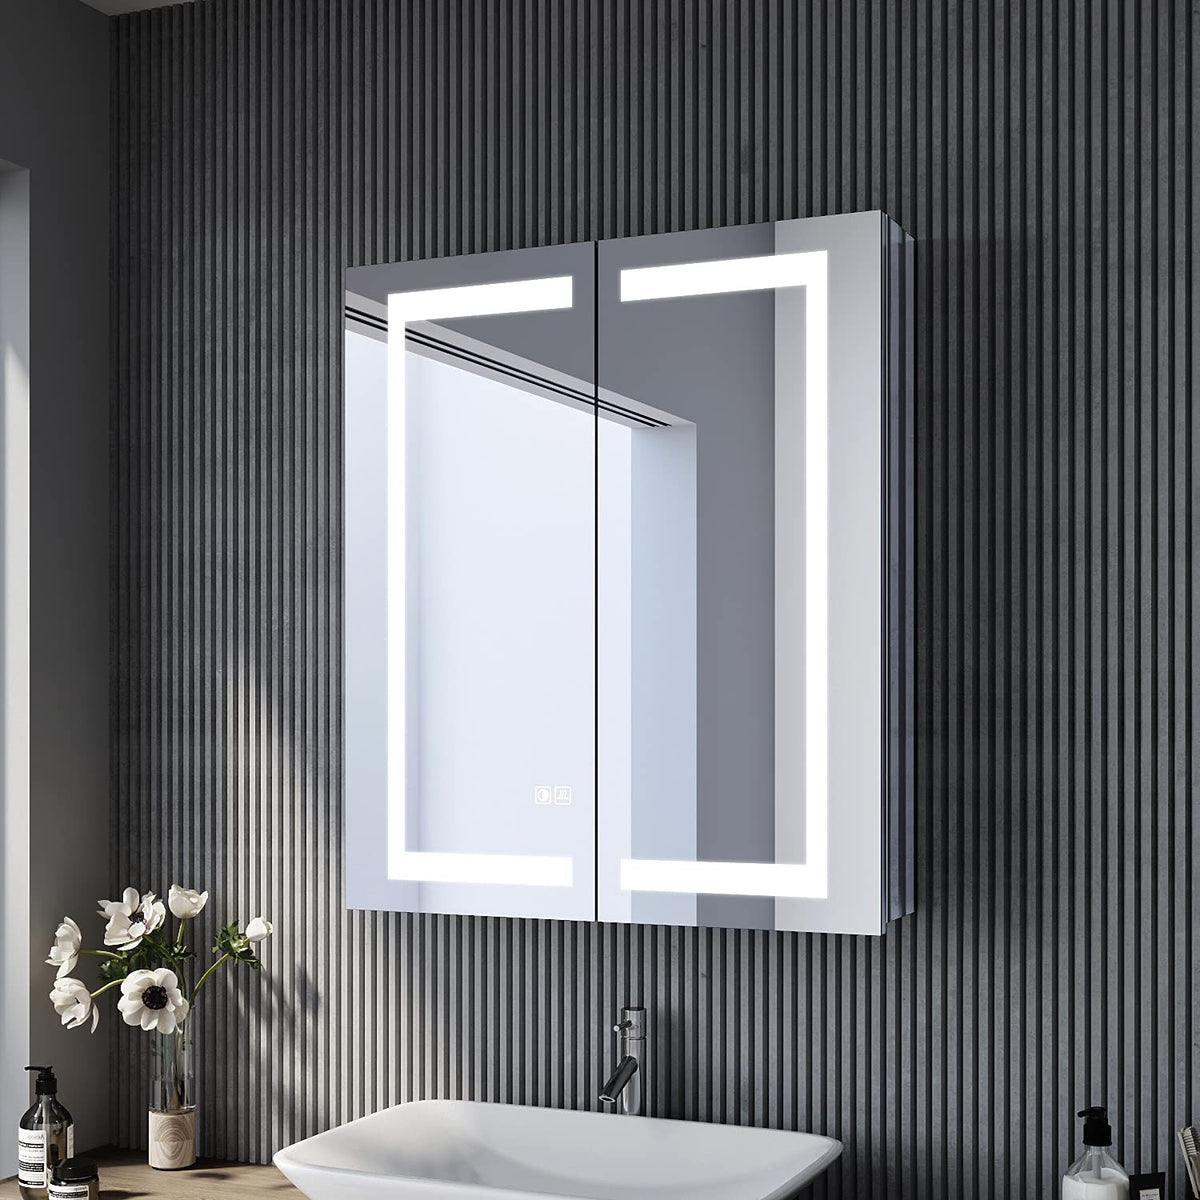 SONNI Bad mit Beleuchtung 60 cm breit Edelstahl Badezimmer-Spiegelschrank mit Beleuchtung und Steckdose Touchschalter Kabelloses Scharnier Design